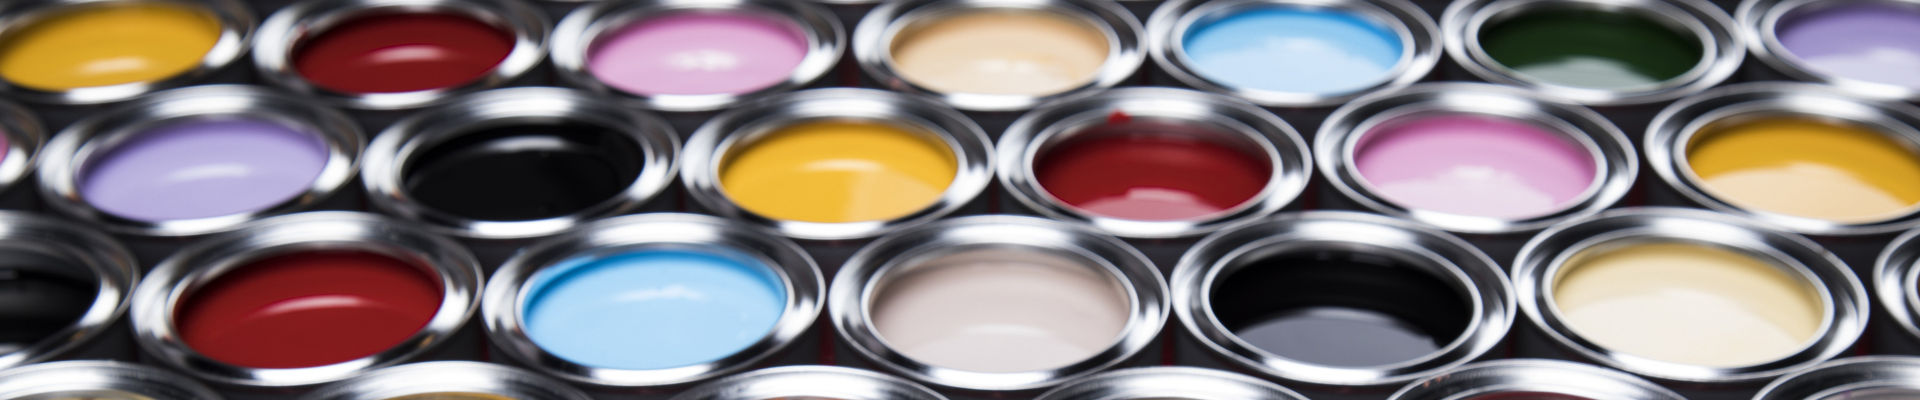 Grande variedade de latas de tinta abertas contendo várias cores de tinta